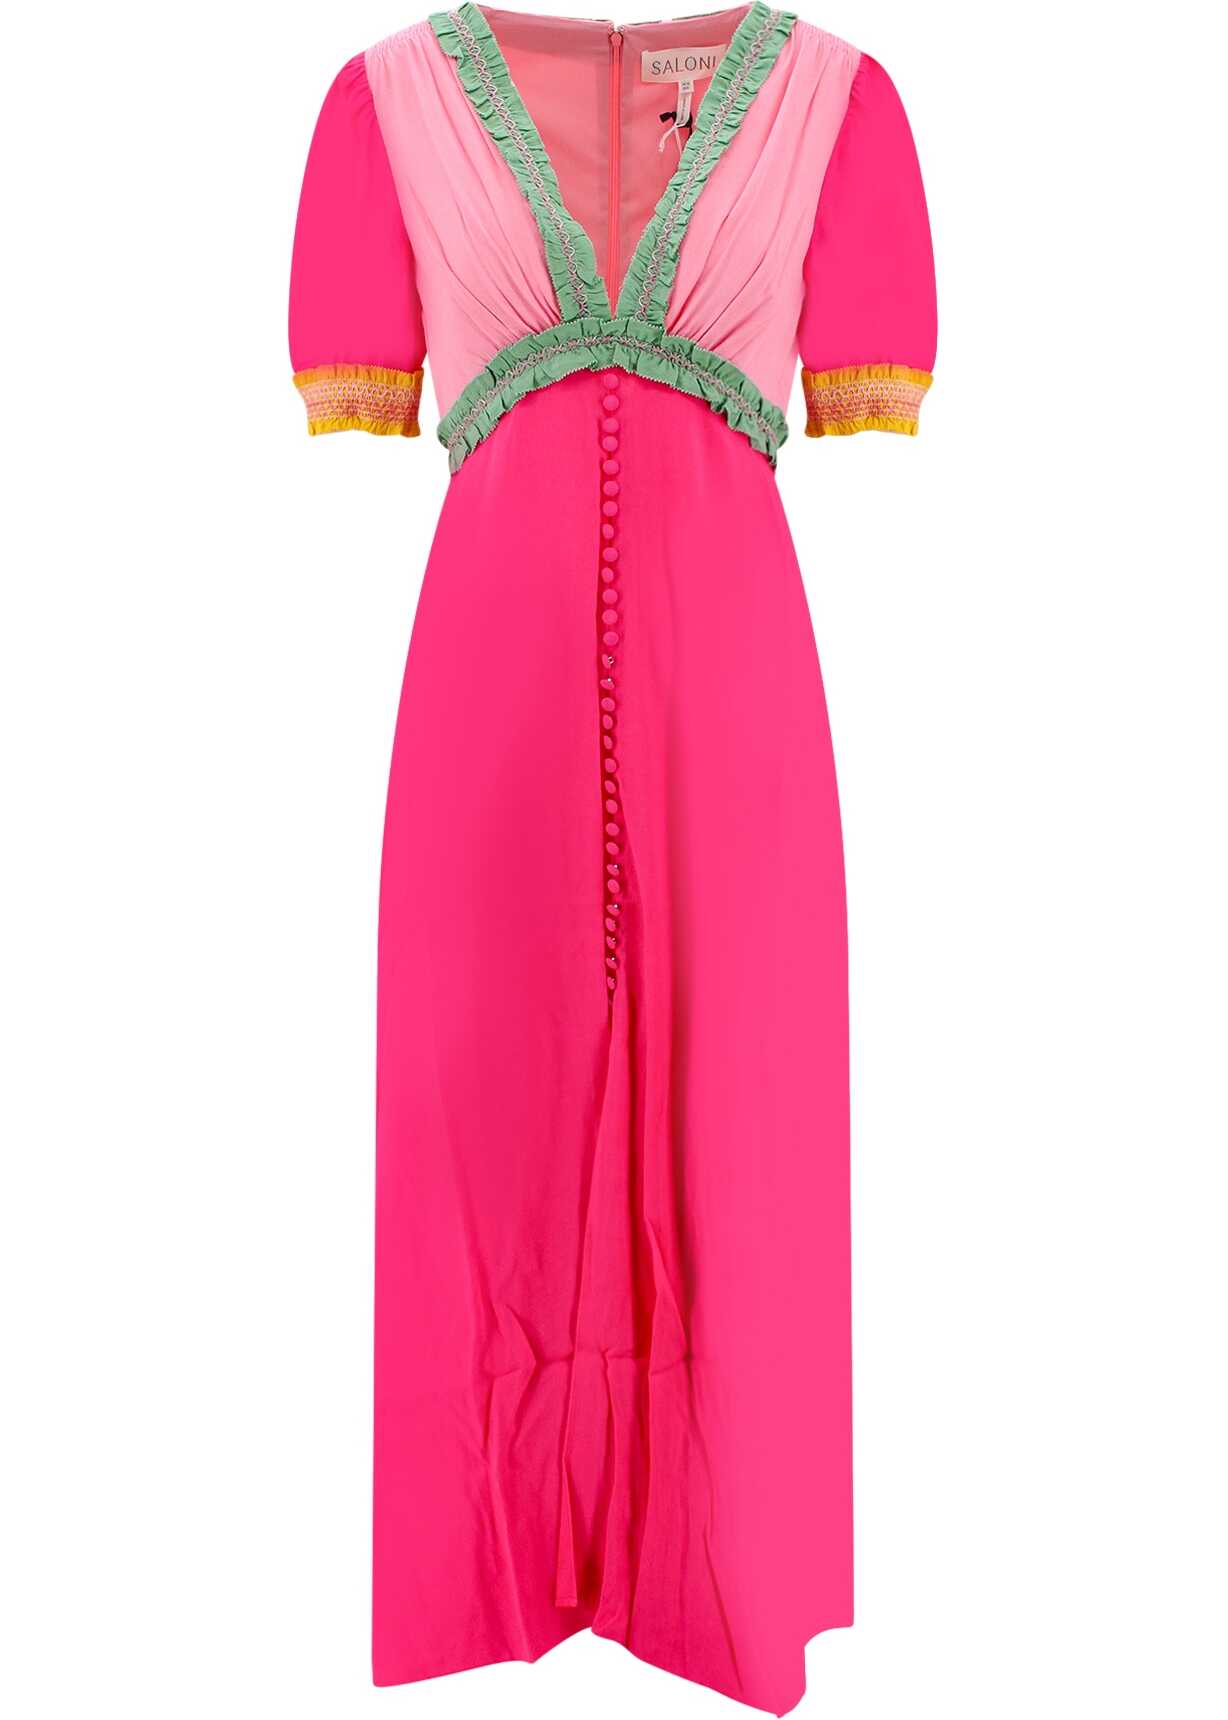 SALONI Rayon Dress PINK